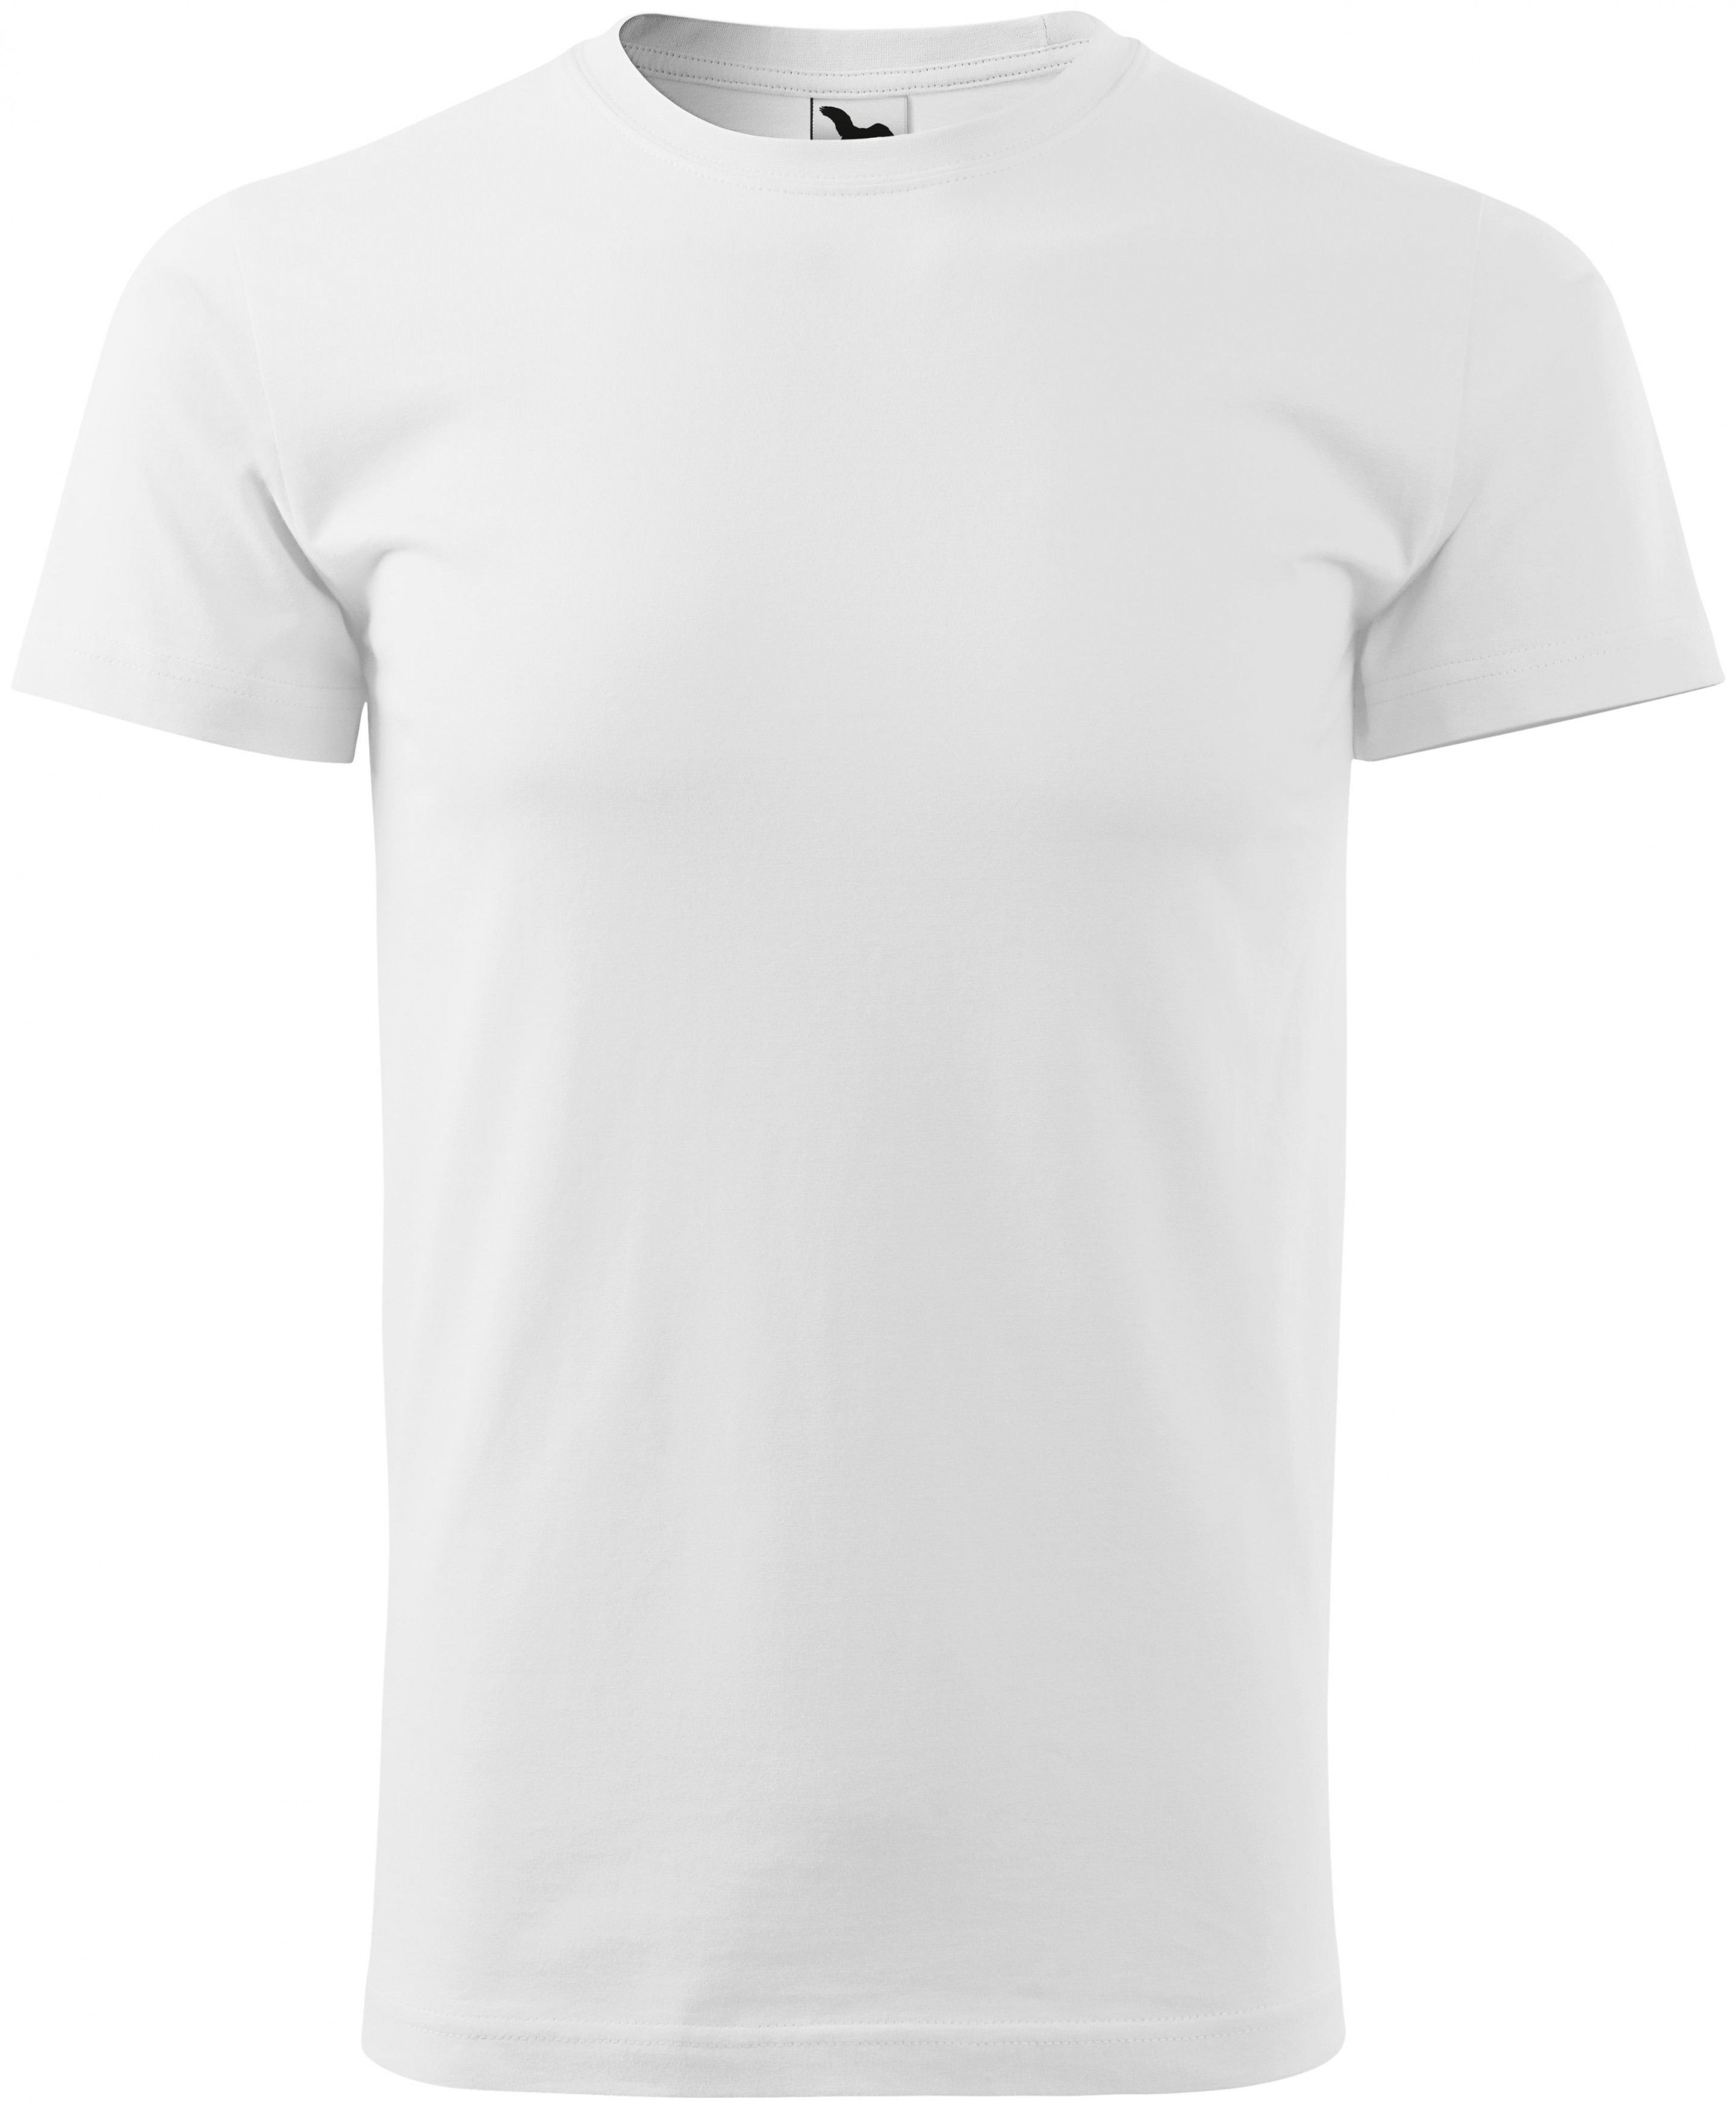 Pánske tričko jednoduché, biela, XS